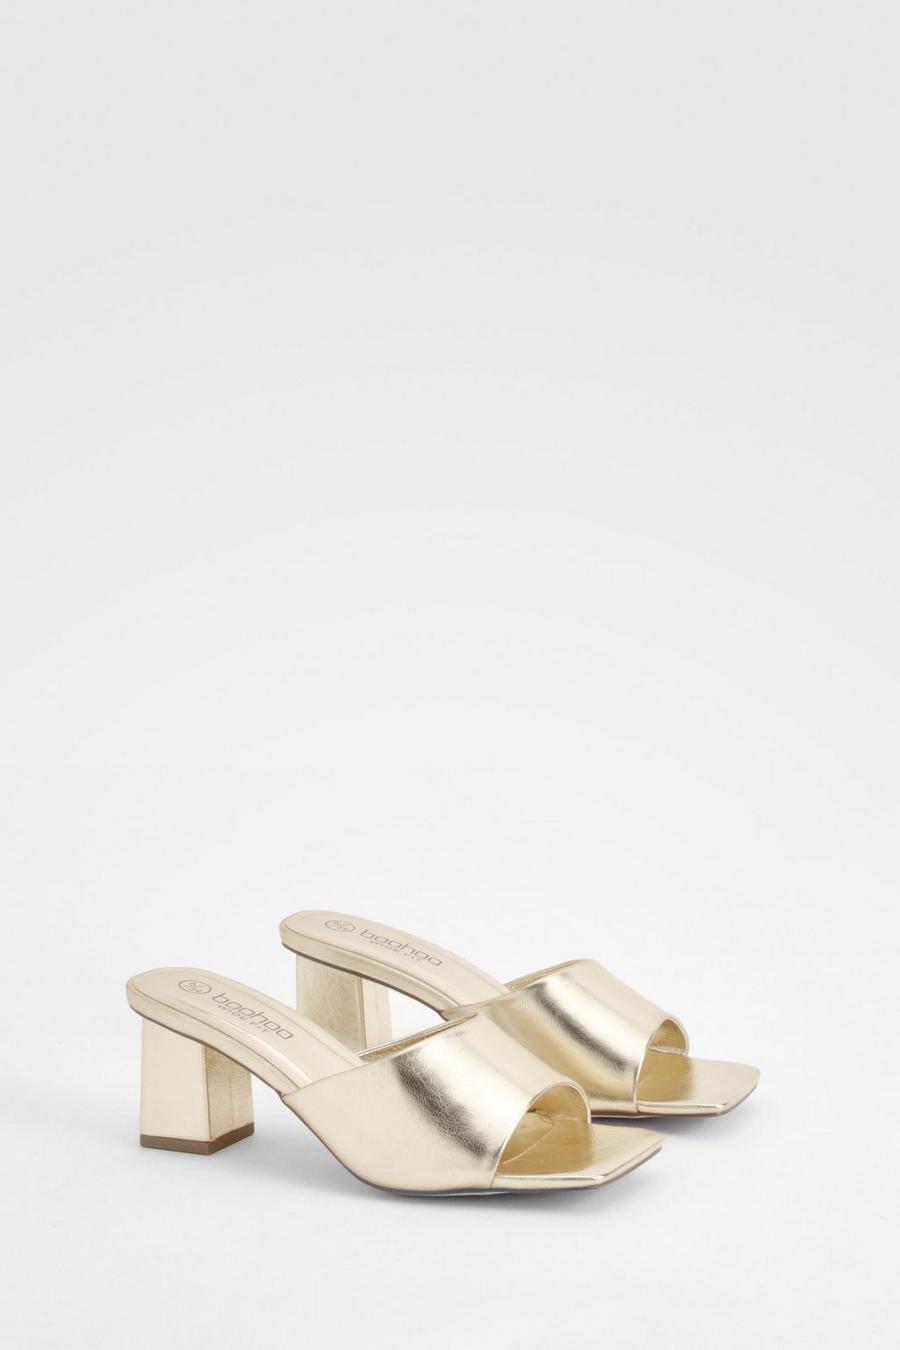 Sandali Mules a calzata ampia metallizzati con tacco basso a blocco, Gold